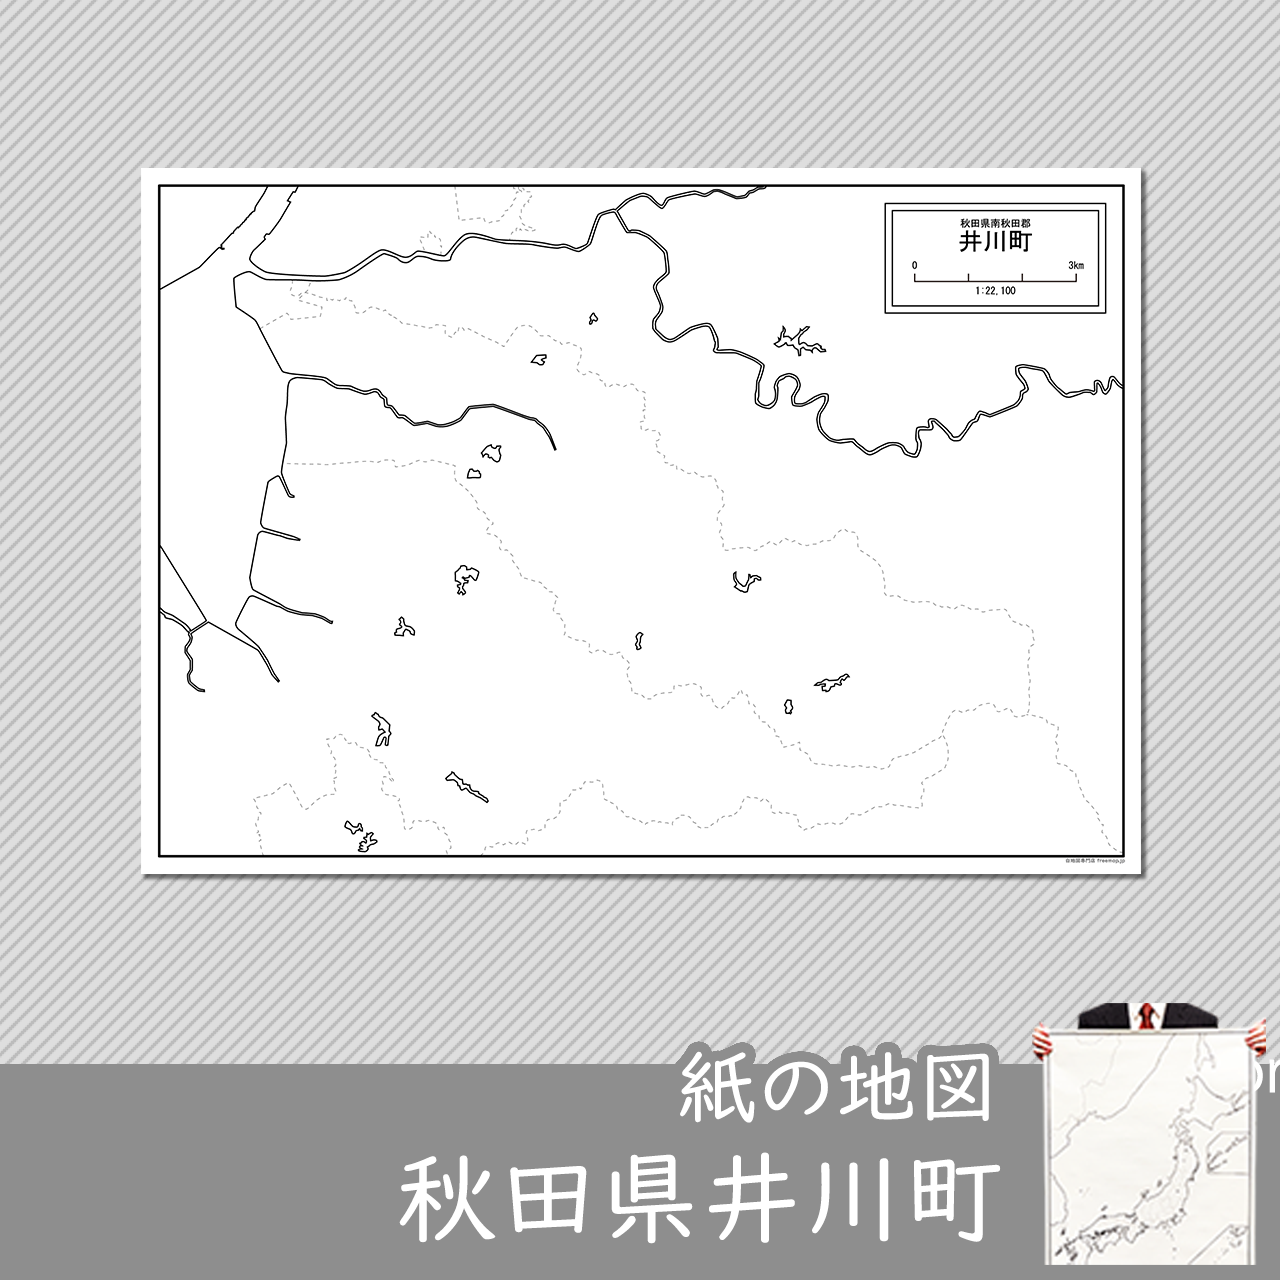 井川町の紙の白地図のサムネイル